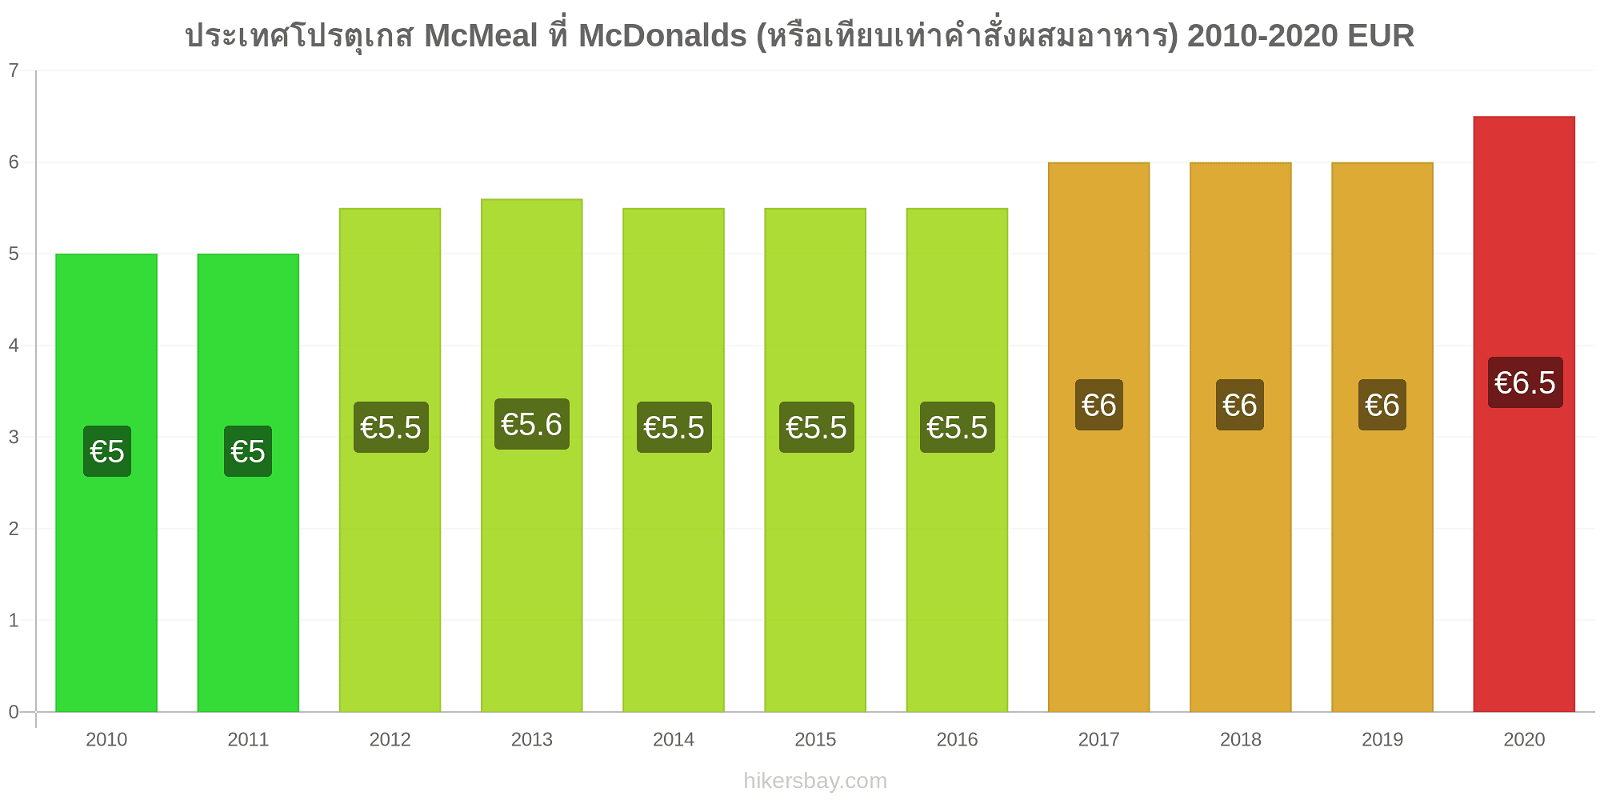 ประเทศโปรตุเกส การเปลี่ยนแปลงราคา McMeal ที่ McDonalds (หรือเทียบเท่าคำสั่งผสมอาหาร) hikersbay.com